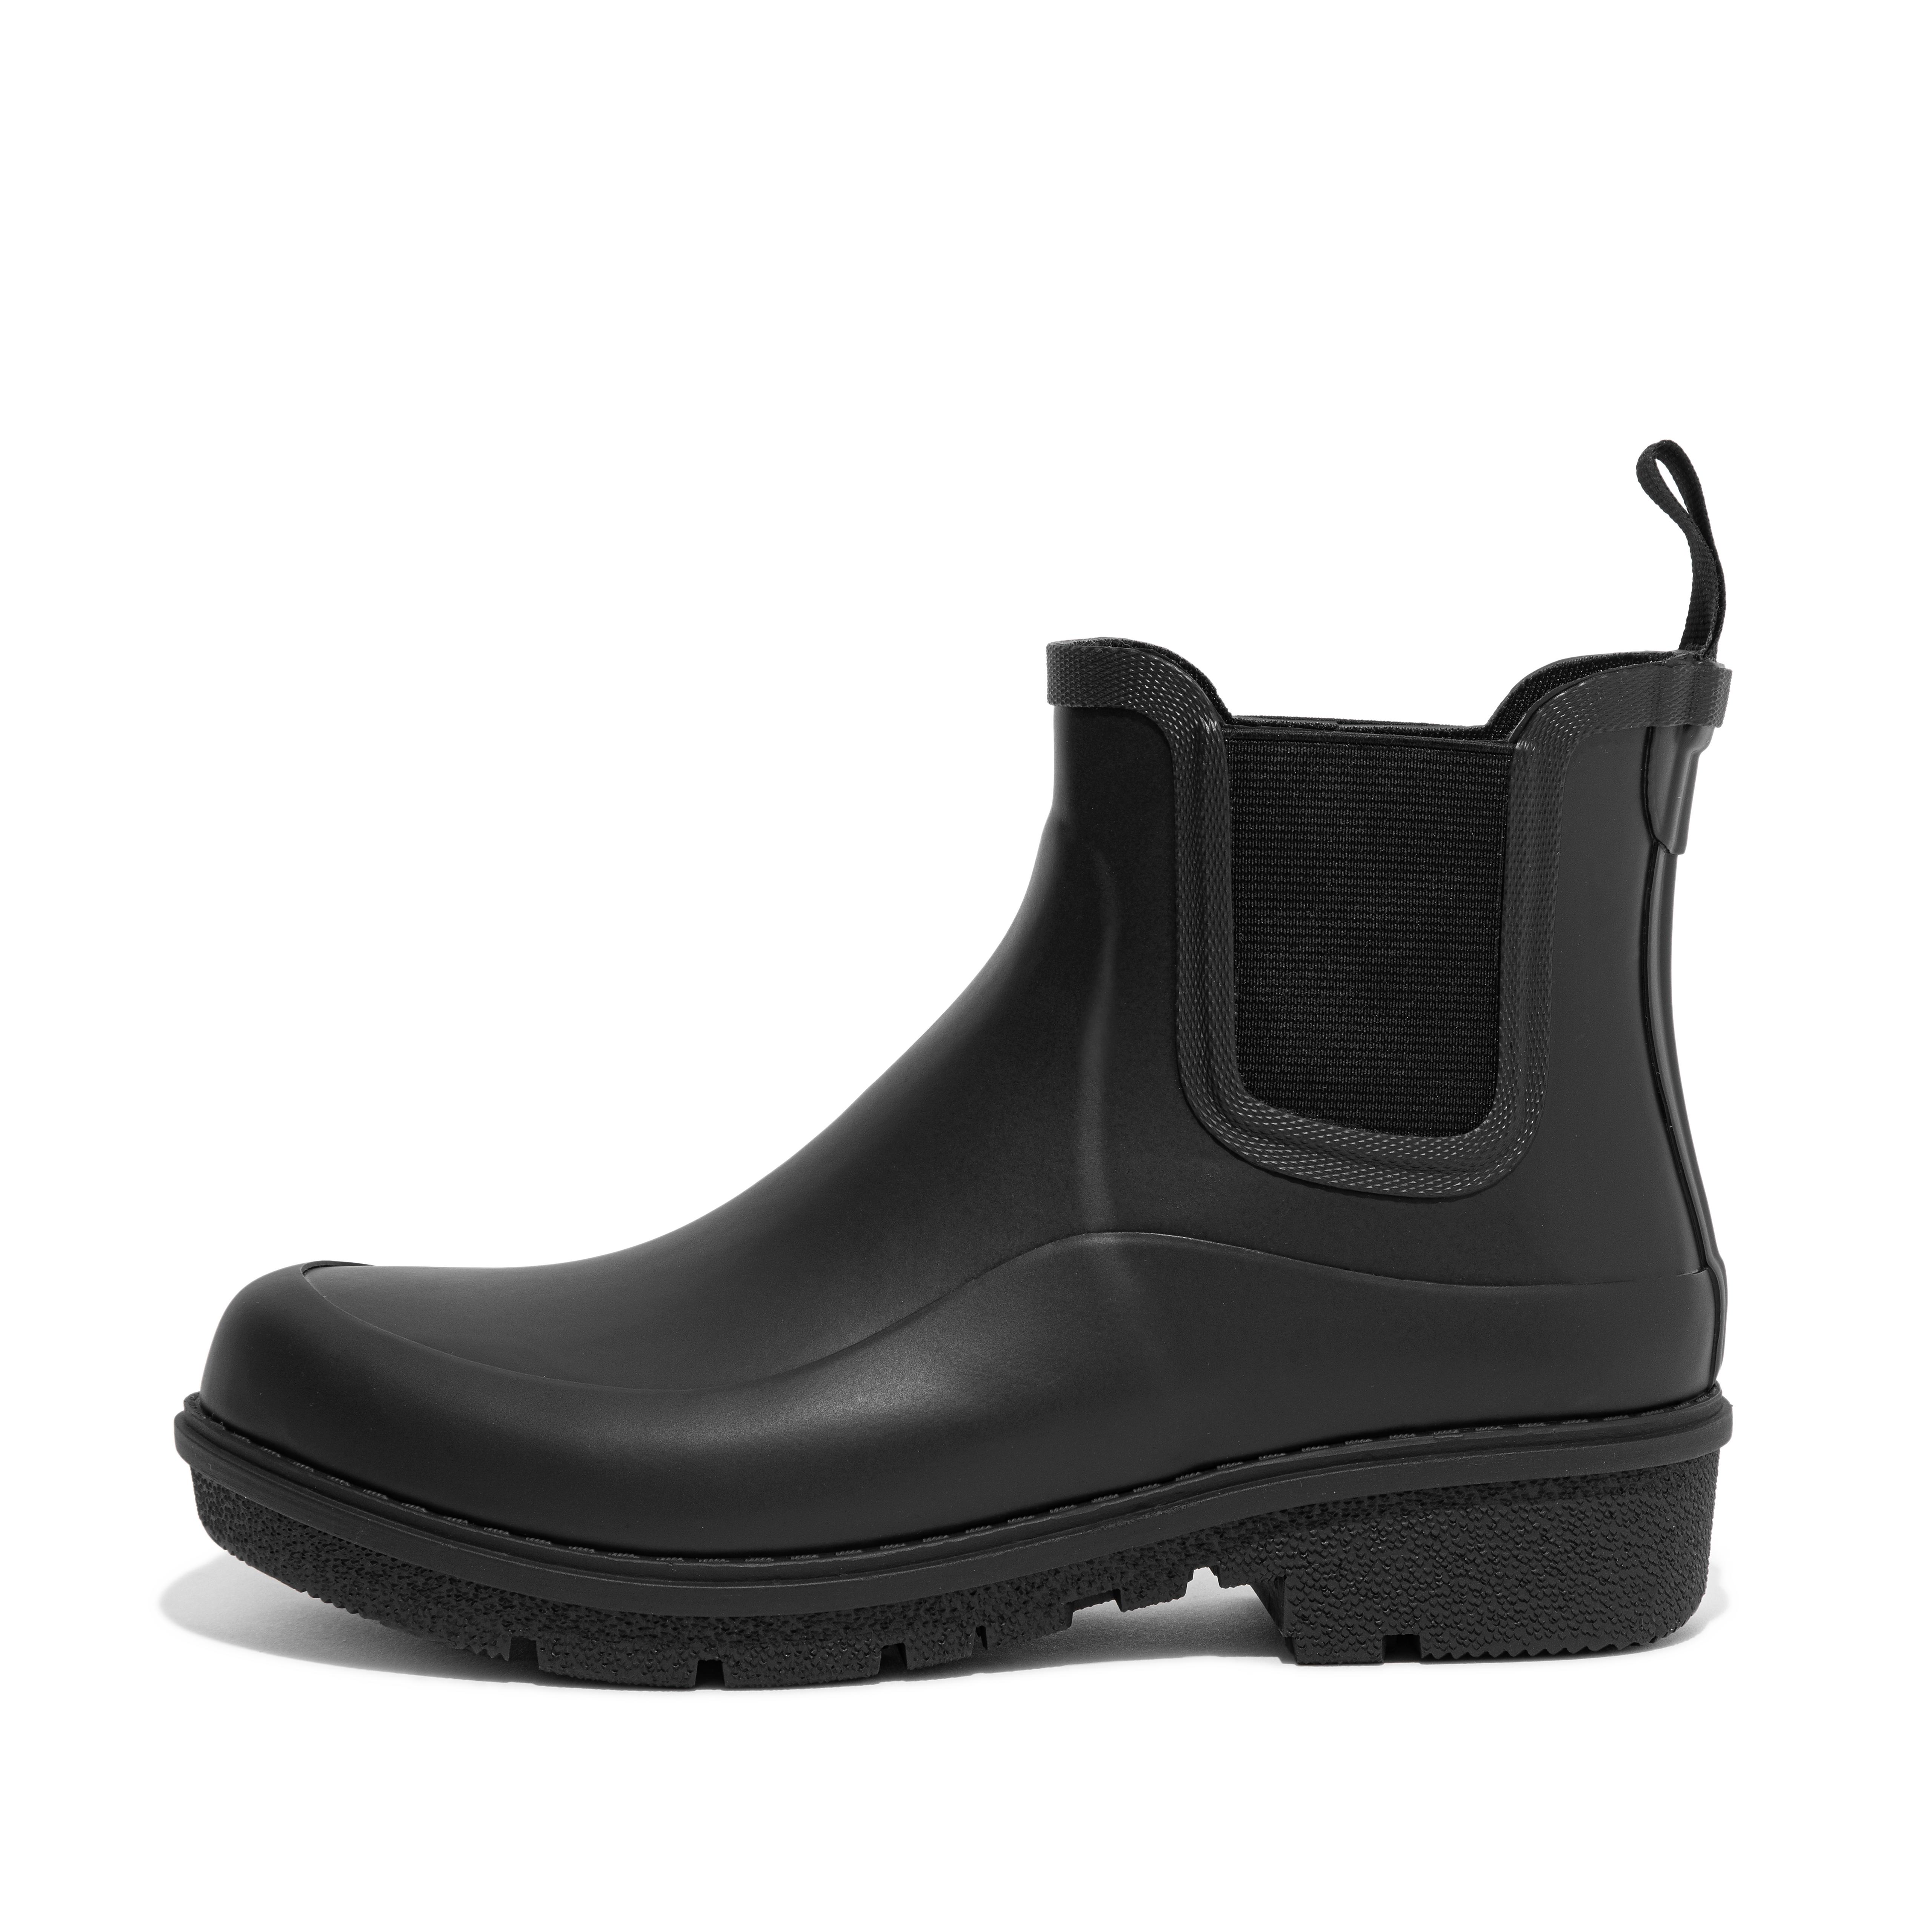 핏플랍 장화 (숏 레인부츠) FitFlop Chelsea Rain Boots,All Black